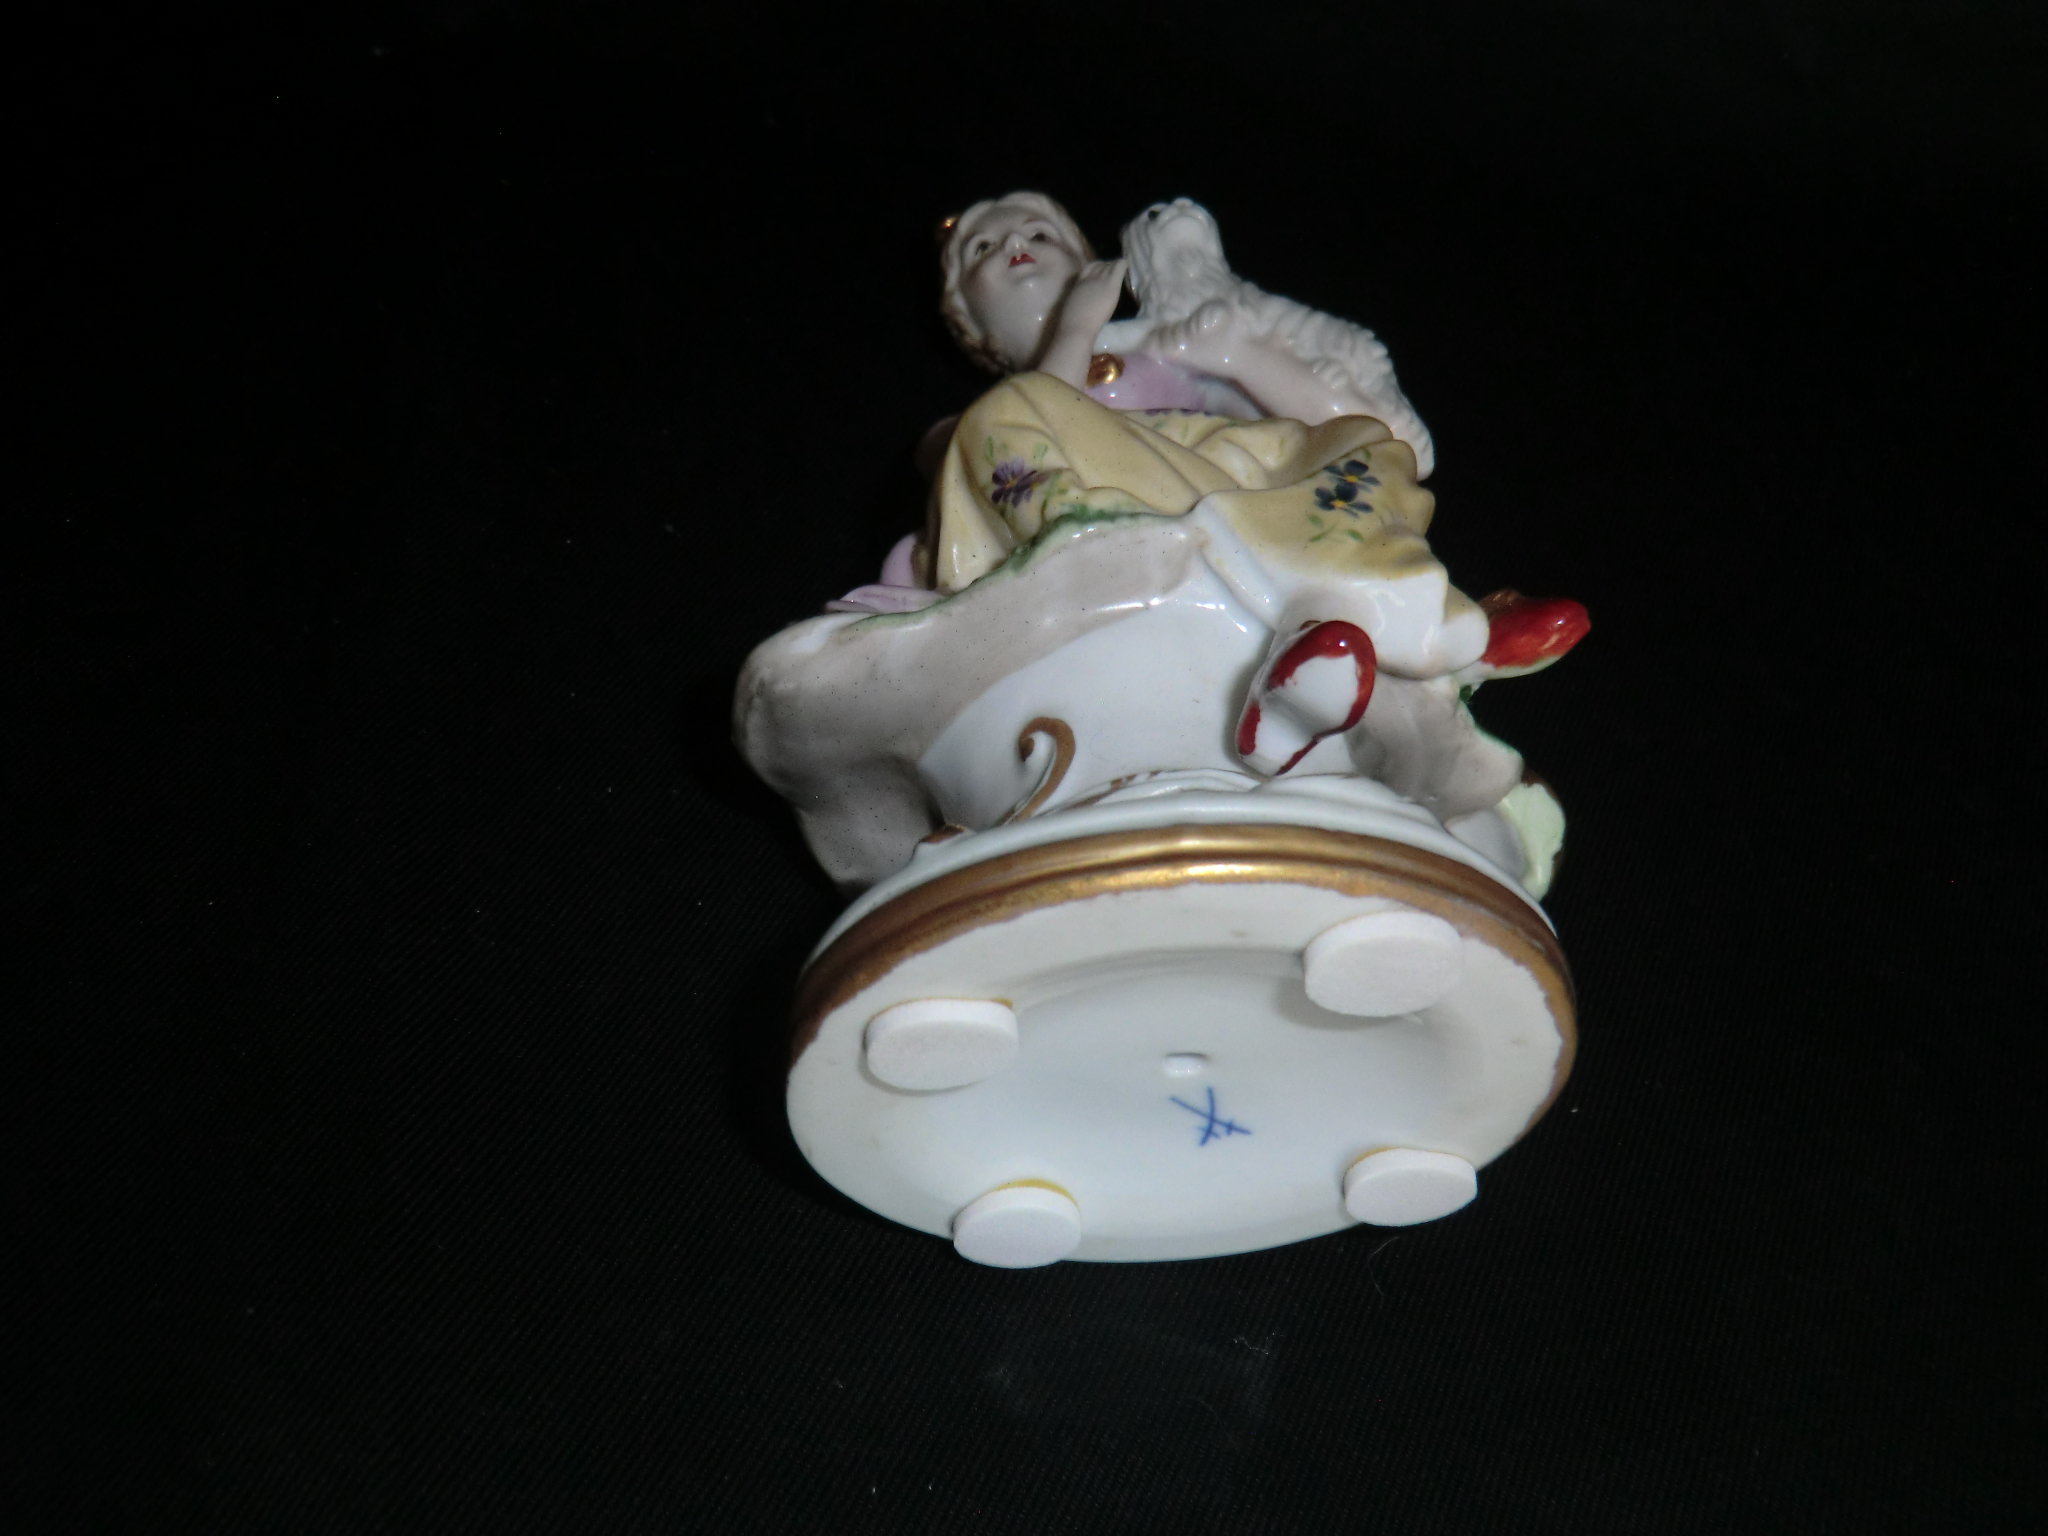 装飾品・マイセン アンティーク人形磁器置物-⑥ | 八事商事 | 絵画レンタル | 愛知県を中心に絵画作品レンタル事業を展開